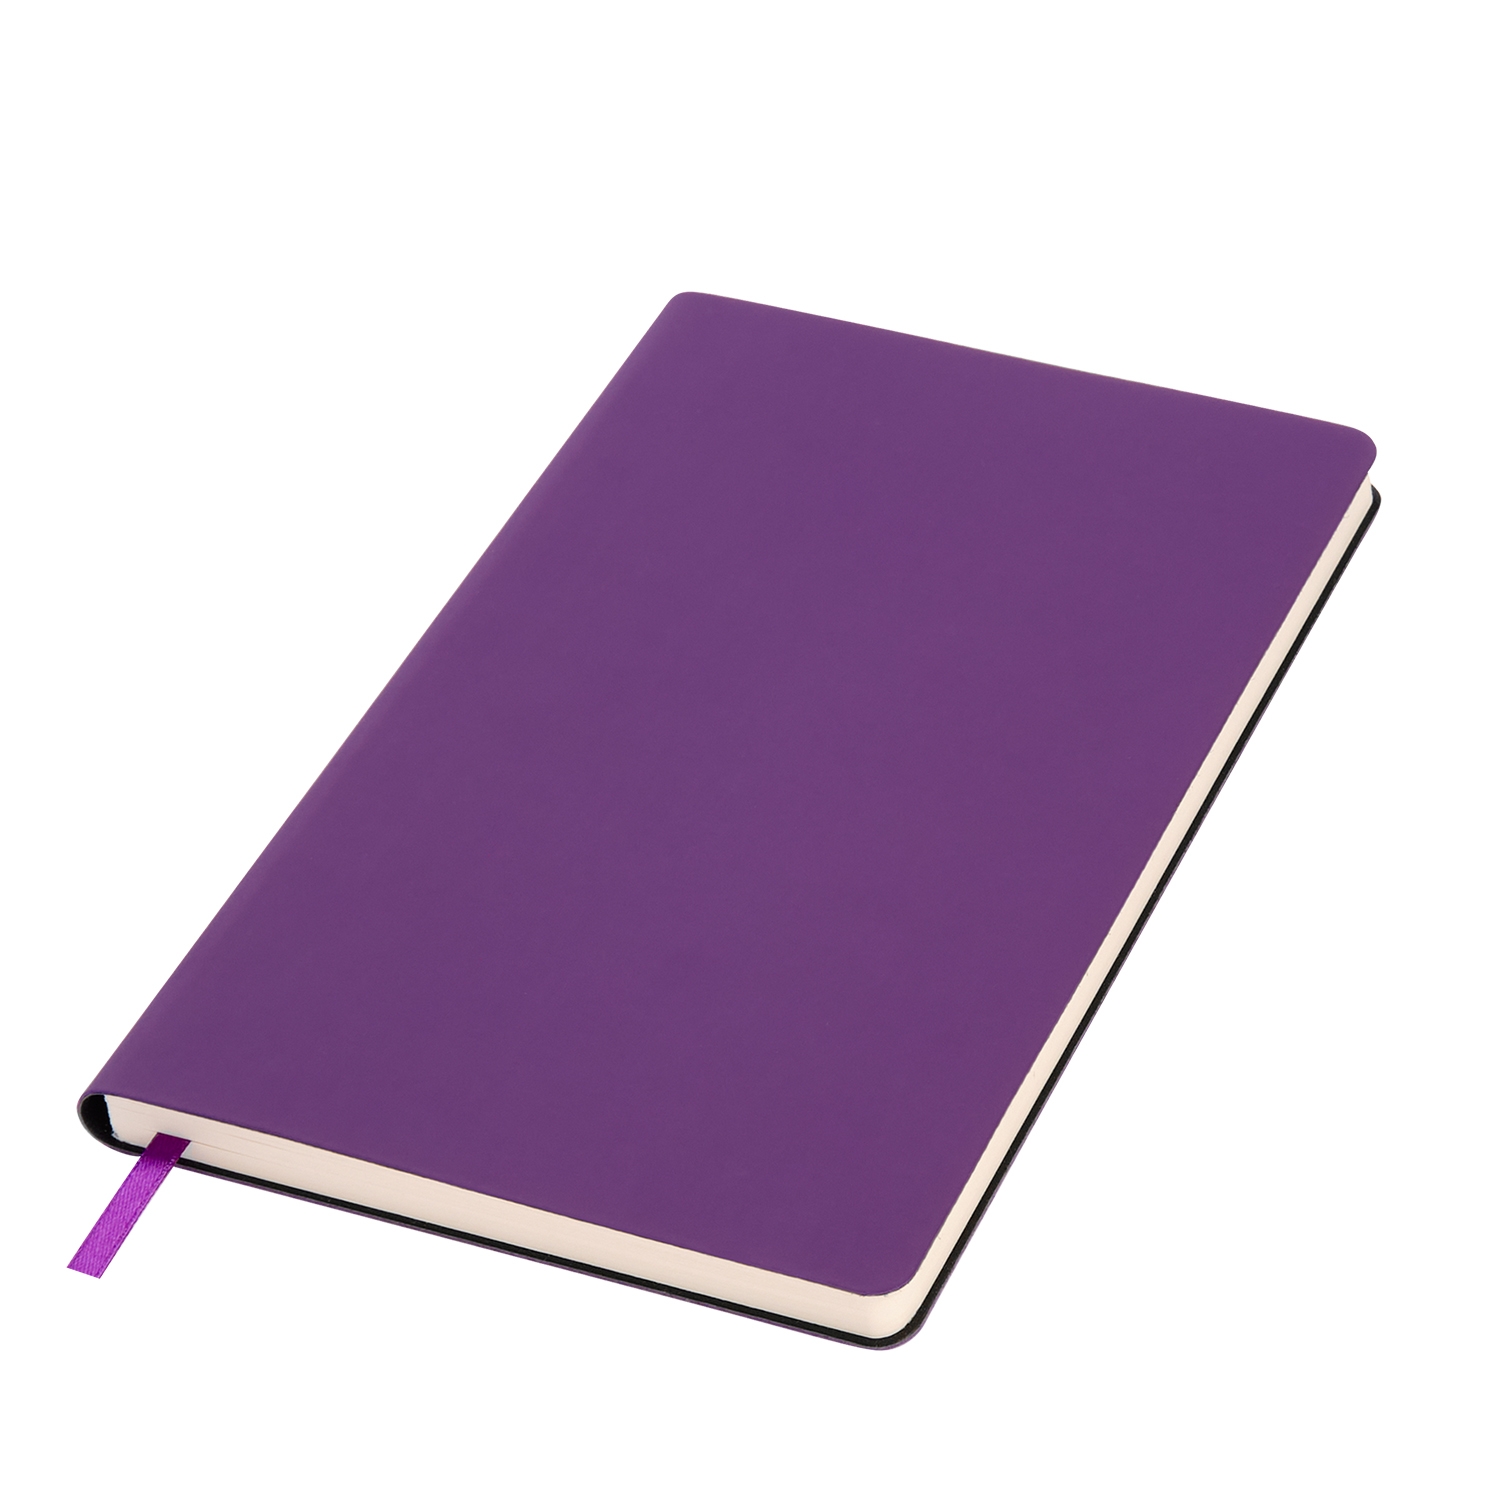 Ежедневник Spark недатированный, фиолетовый (без упаковки, без стикера), фиолетовый